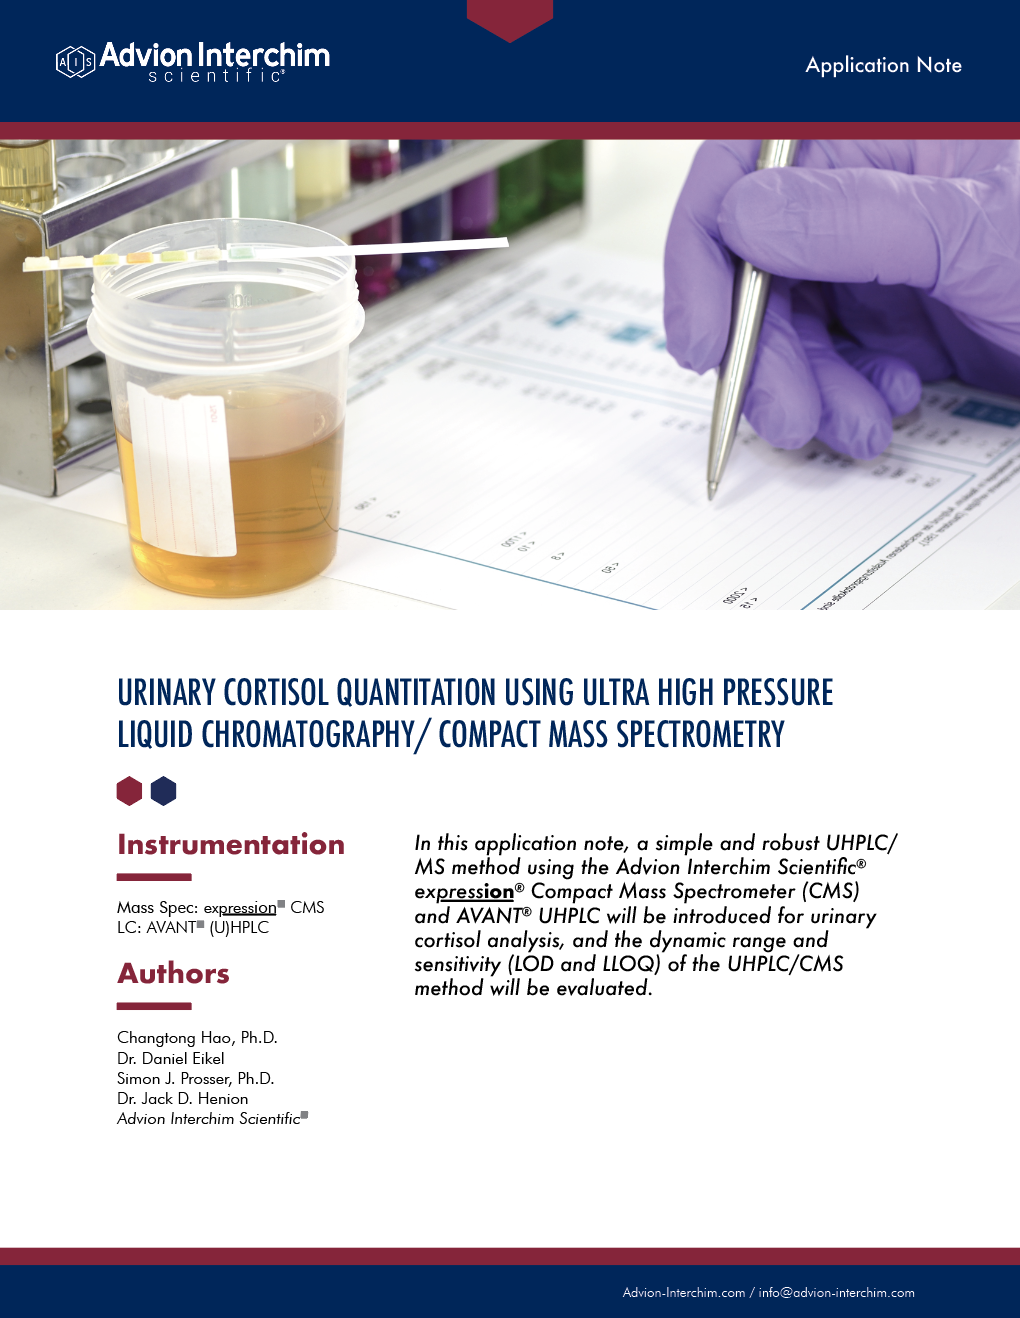 Cuantificación urinaria de cortisol mediante cromatografía líquida de ultra alta presión / espectrometría de masas compacta